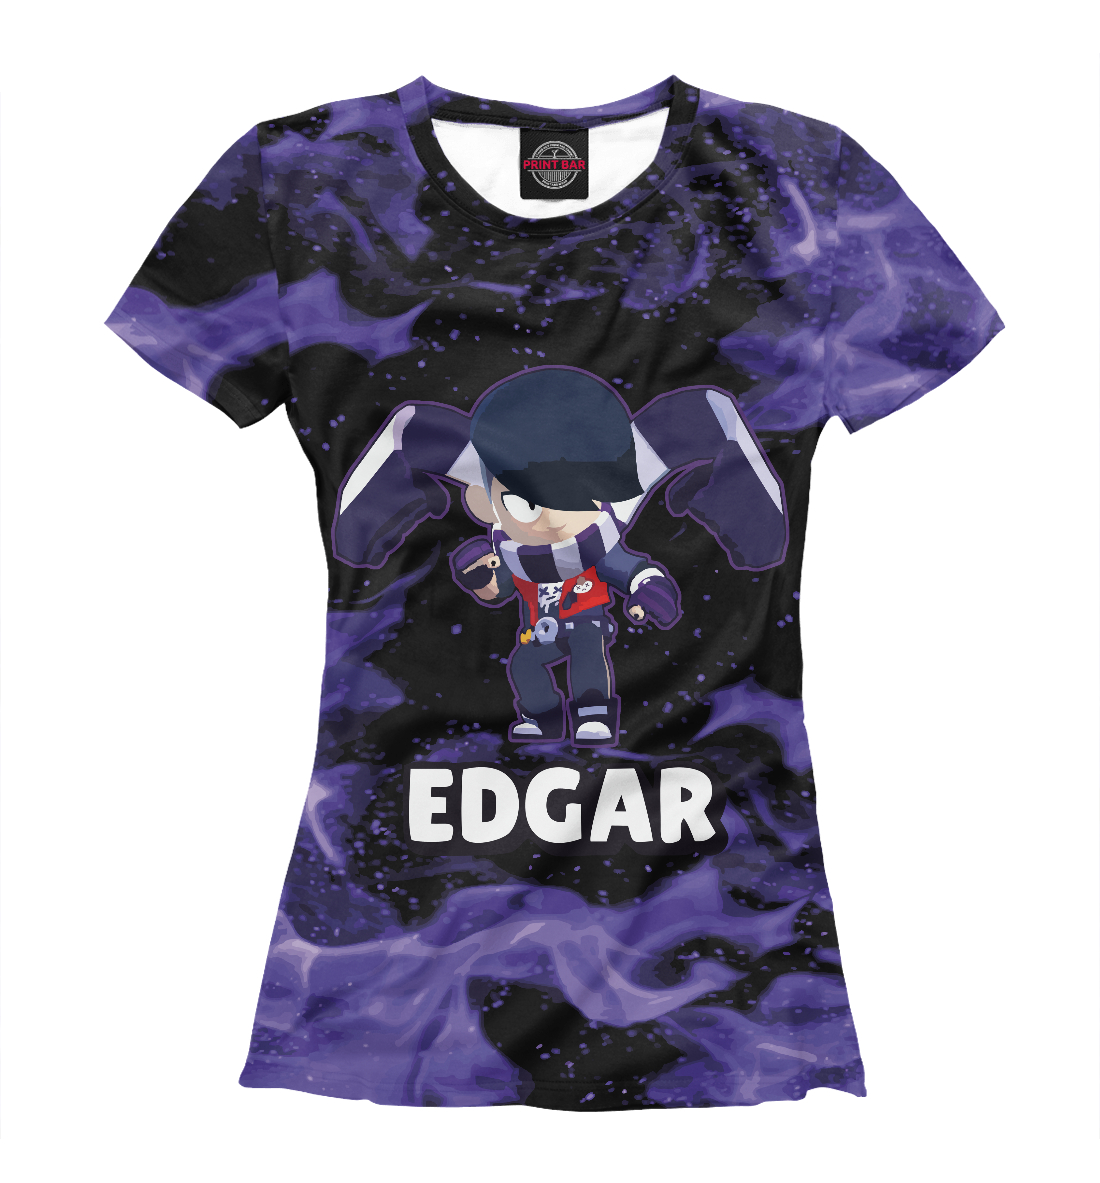 Футболка Brawl stars Edgar для девочек, артикул: CLH-556643-fut-1mp